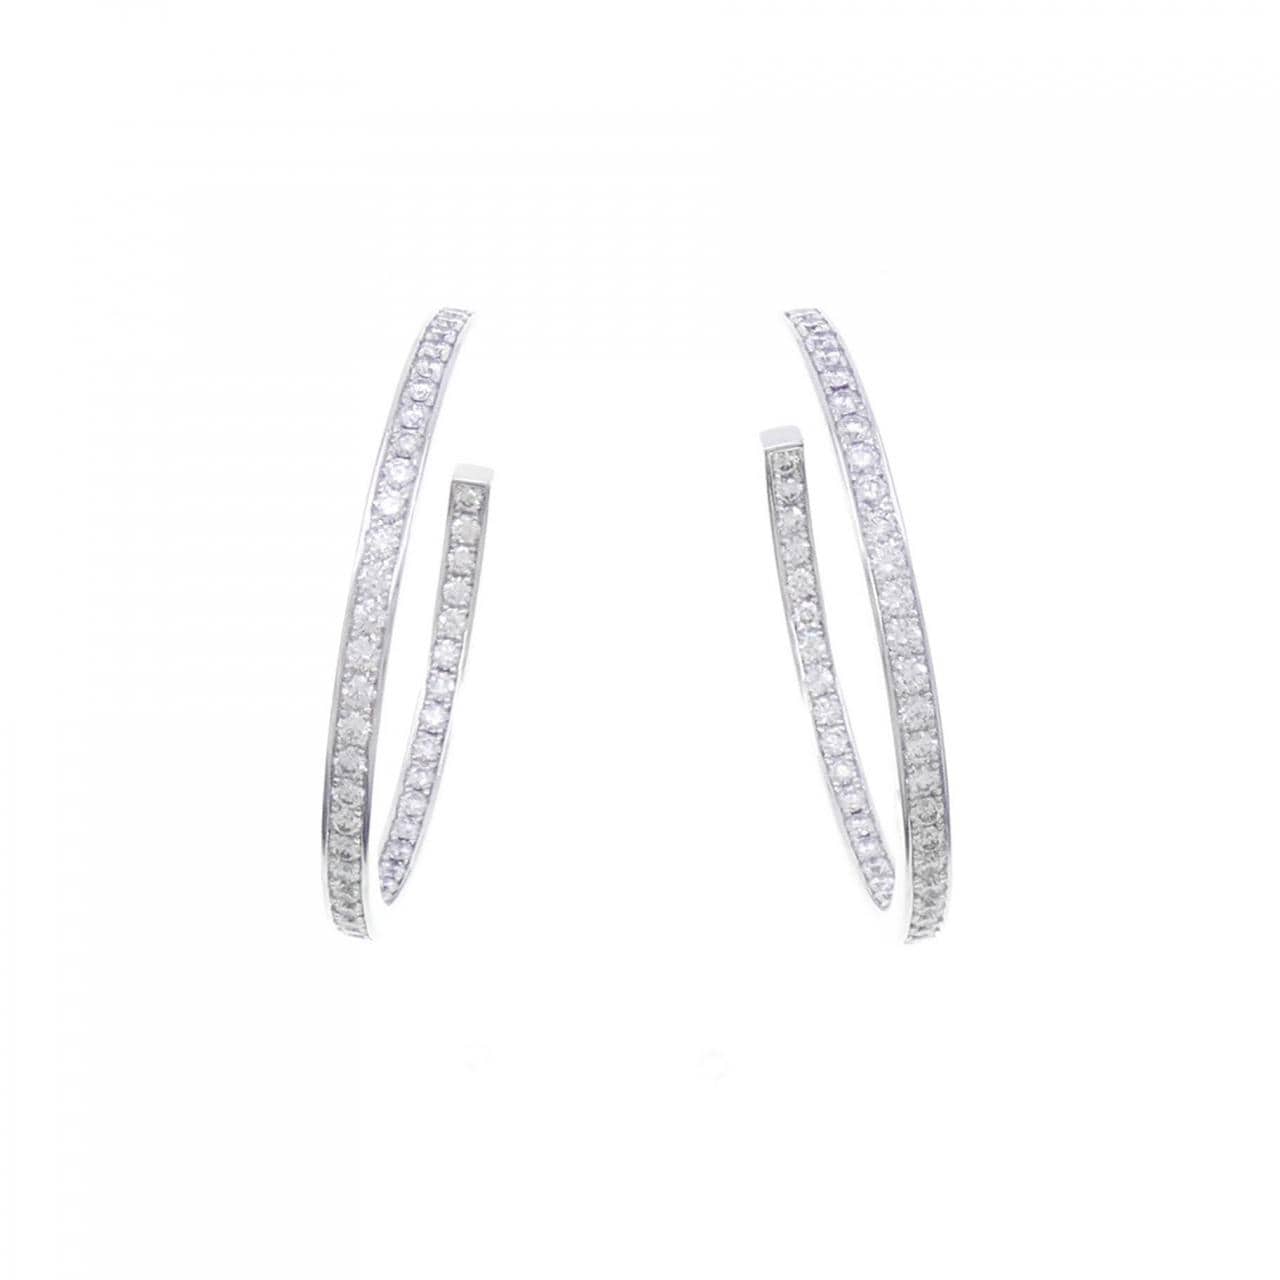 Cartier Diamond earrings